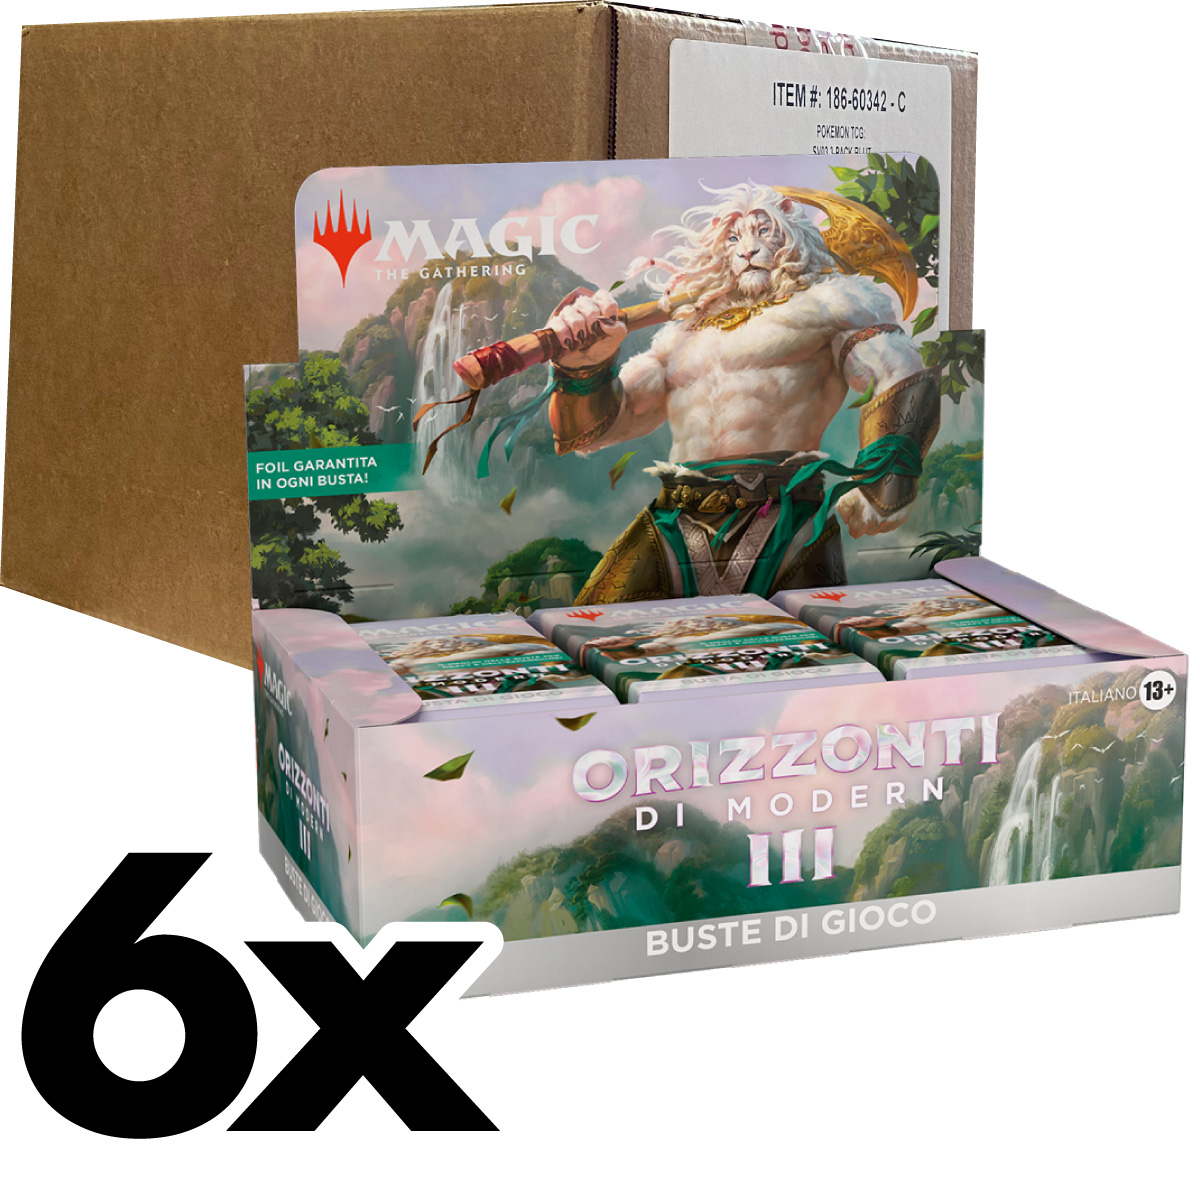 magic the gathering - orizzonti di modern 3 - buste di gioco - case sigillato 6x box 36 buste (ita)